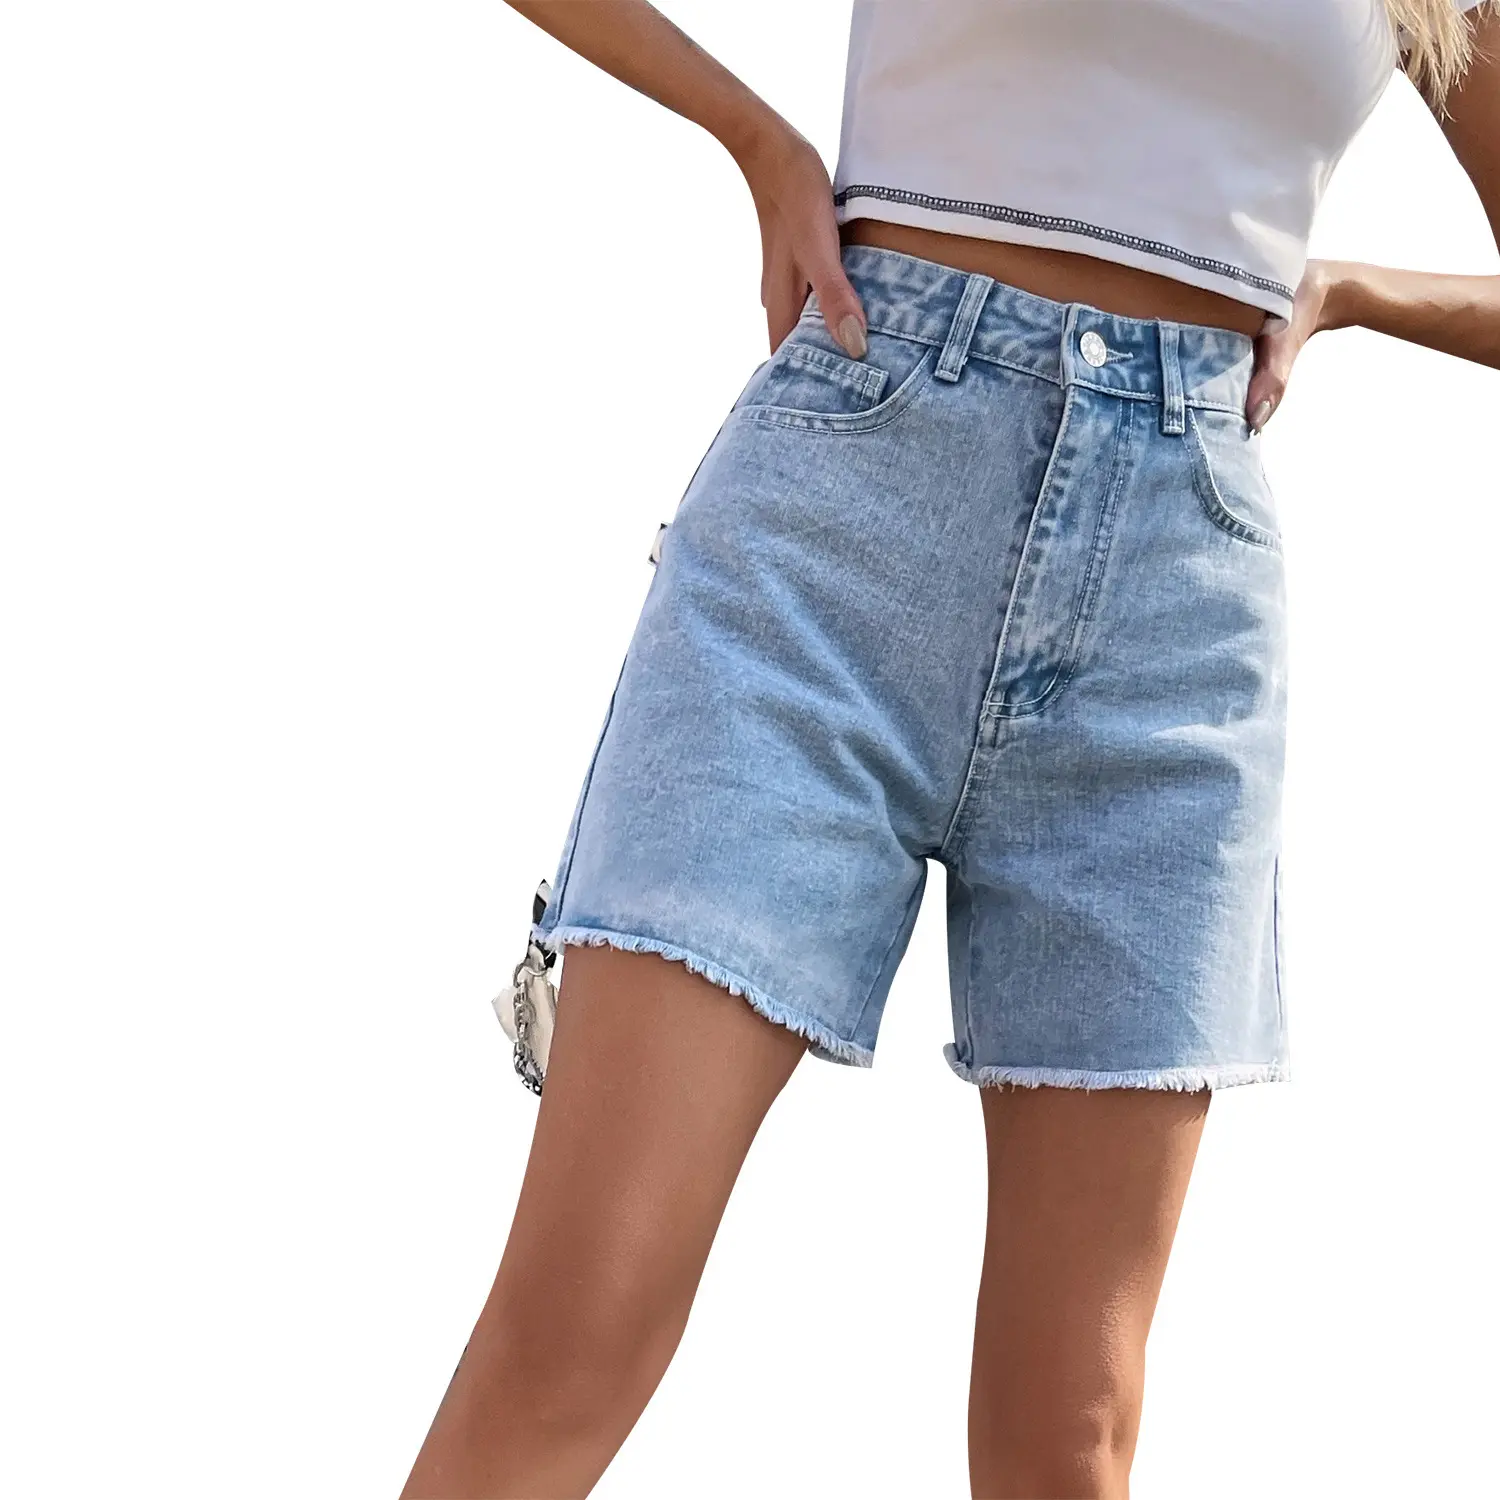 سراويل نسائية أساطير ذات طول متوسط لصديقها سراويل جينز قصيرة ذات طول متوسط للحصول على مظهر أنيق